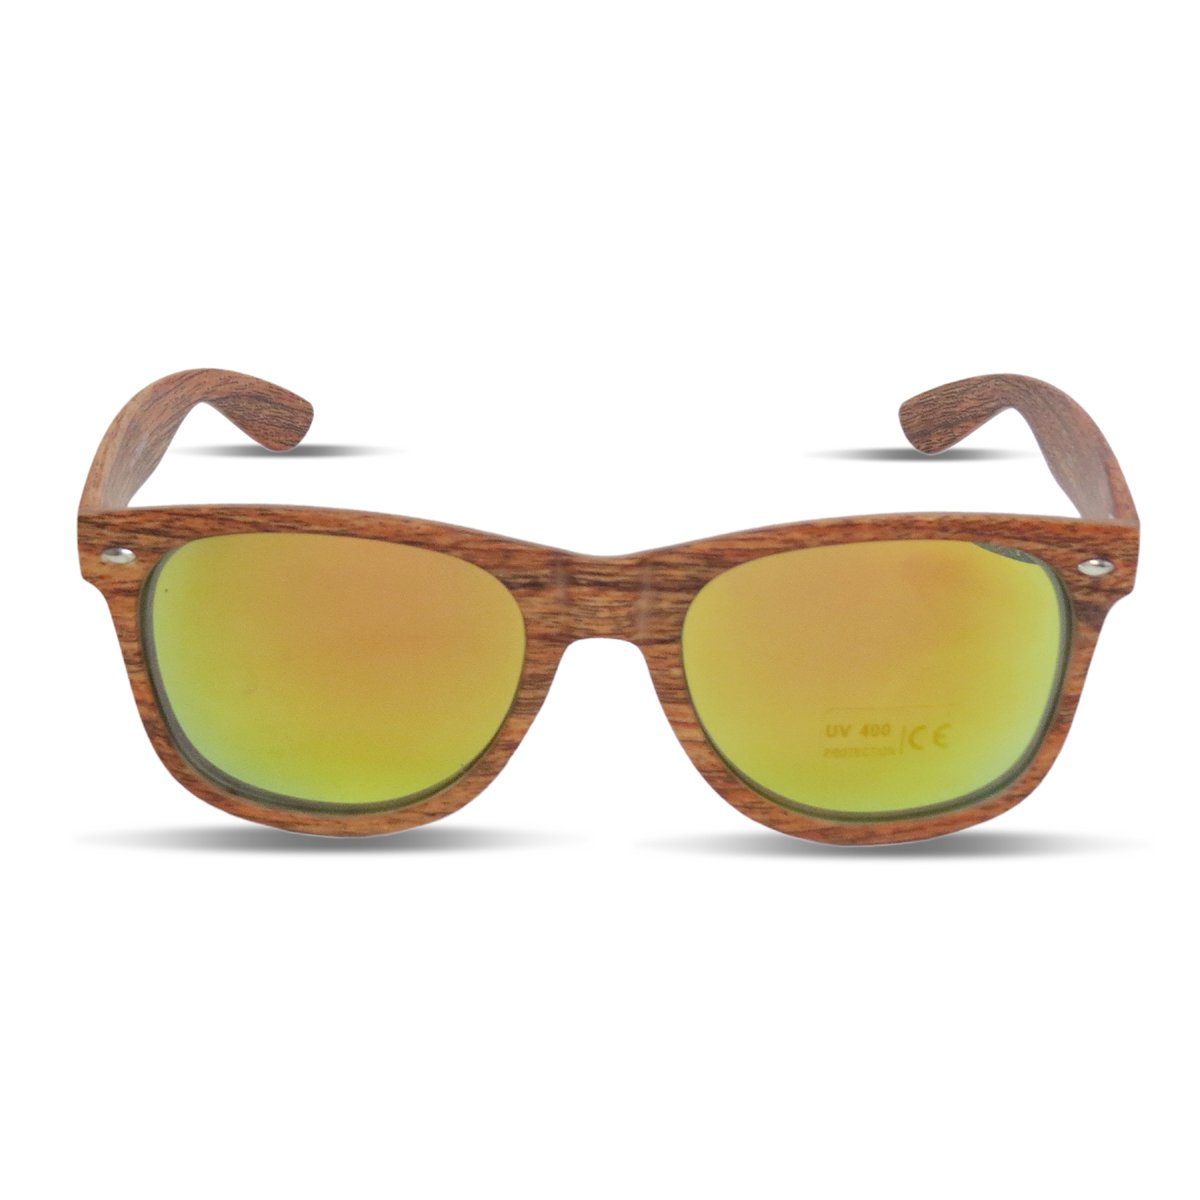 Sonia Originelli Sonnenbrille Sonnenbrille "Wooden Classic" Verspiegelt Brille Sommer Onesize beige